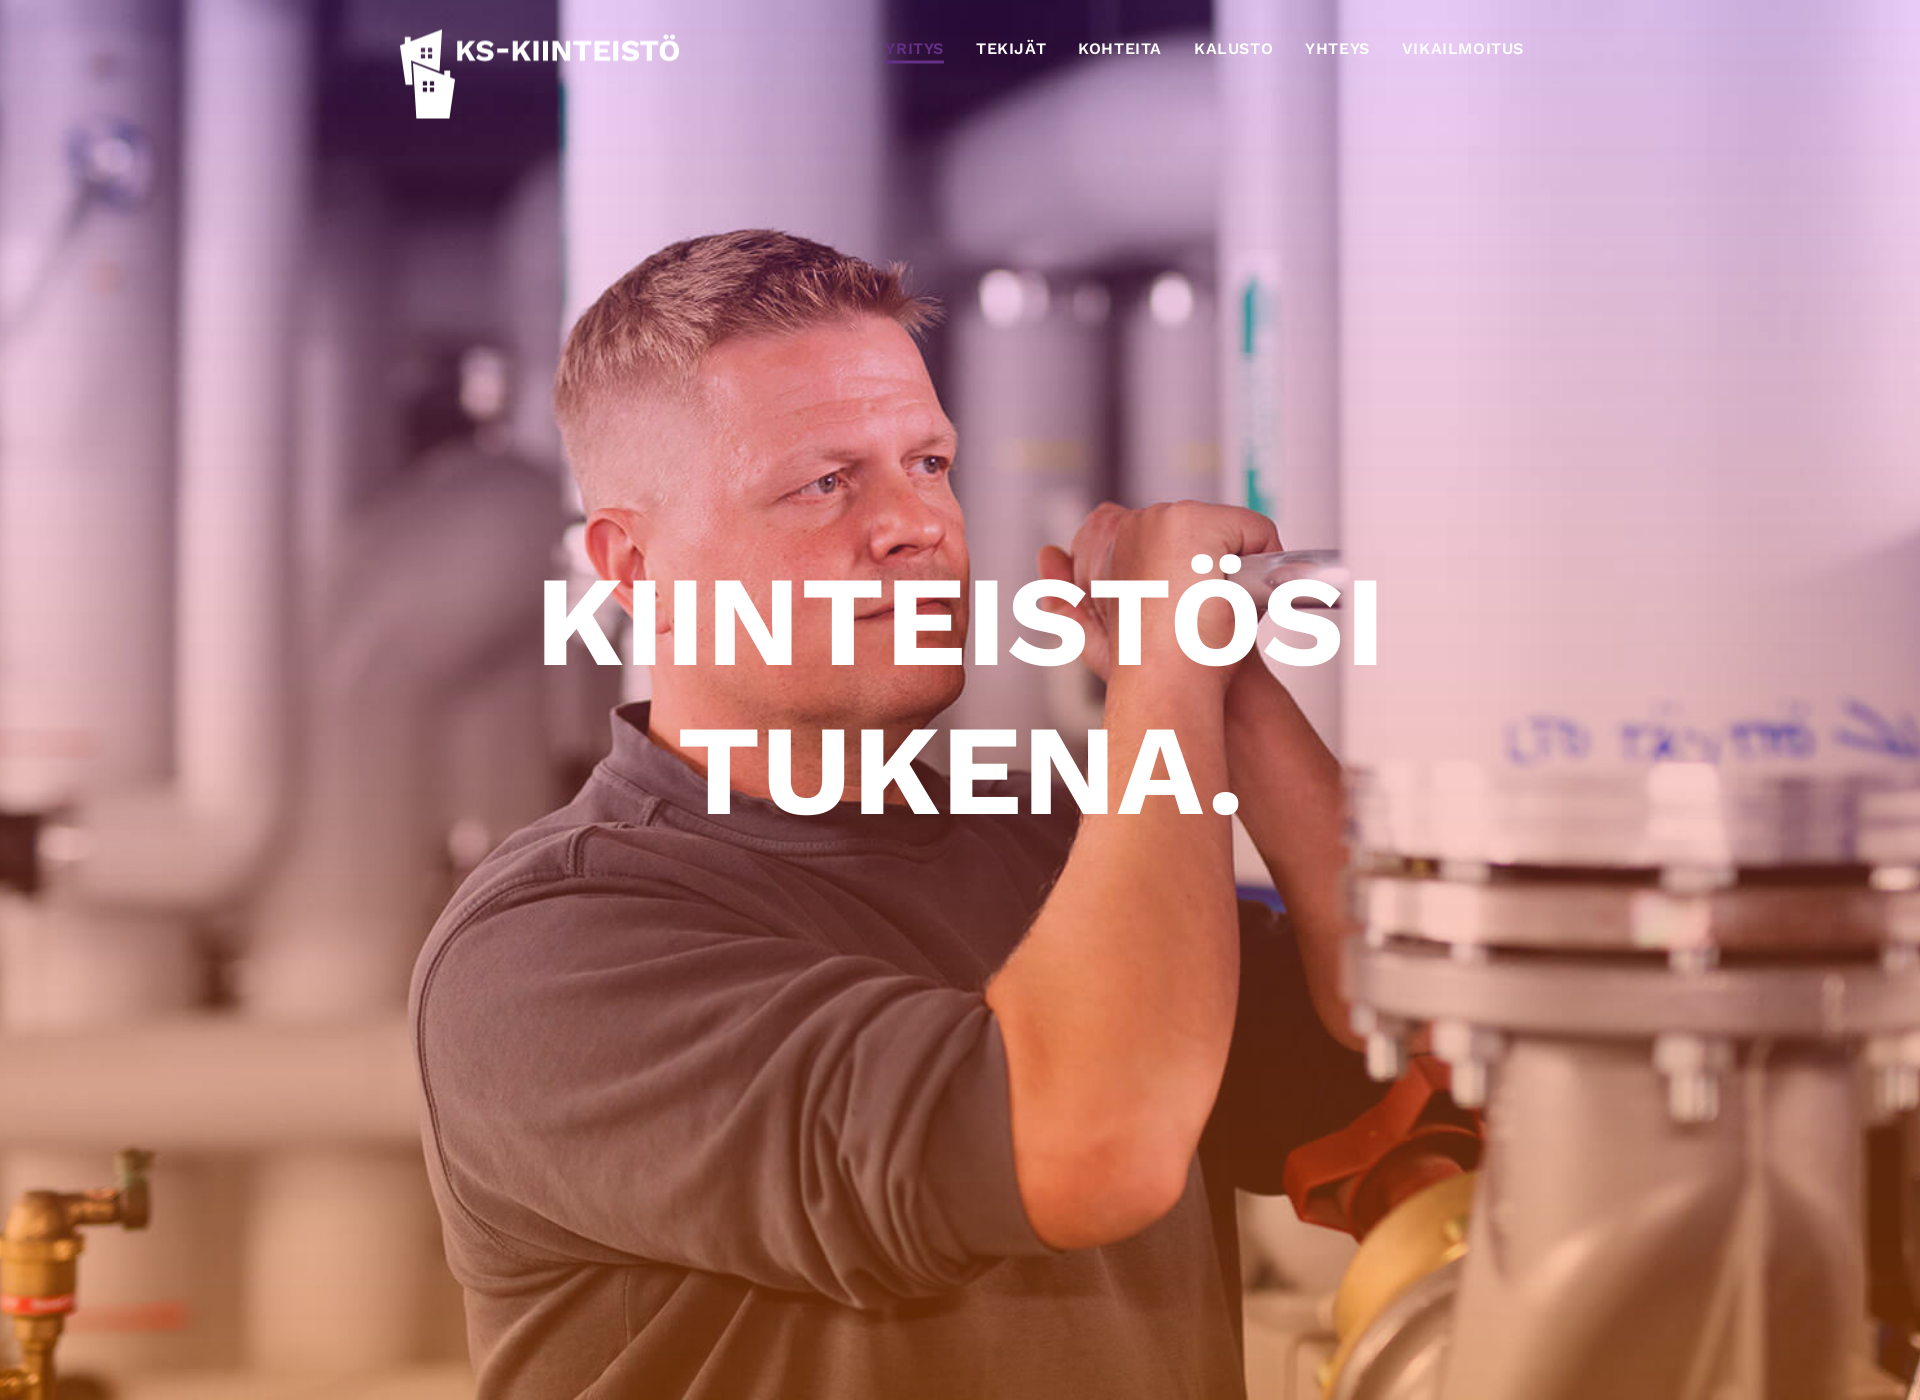 Näyttökuva ks-kiinteisto.fi